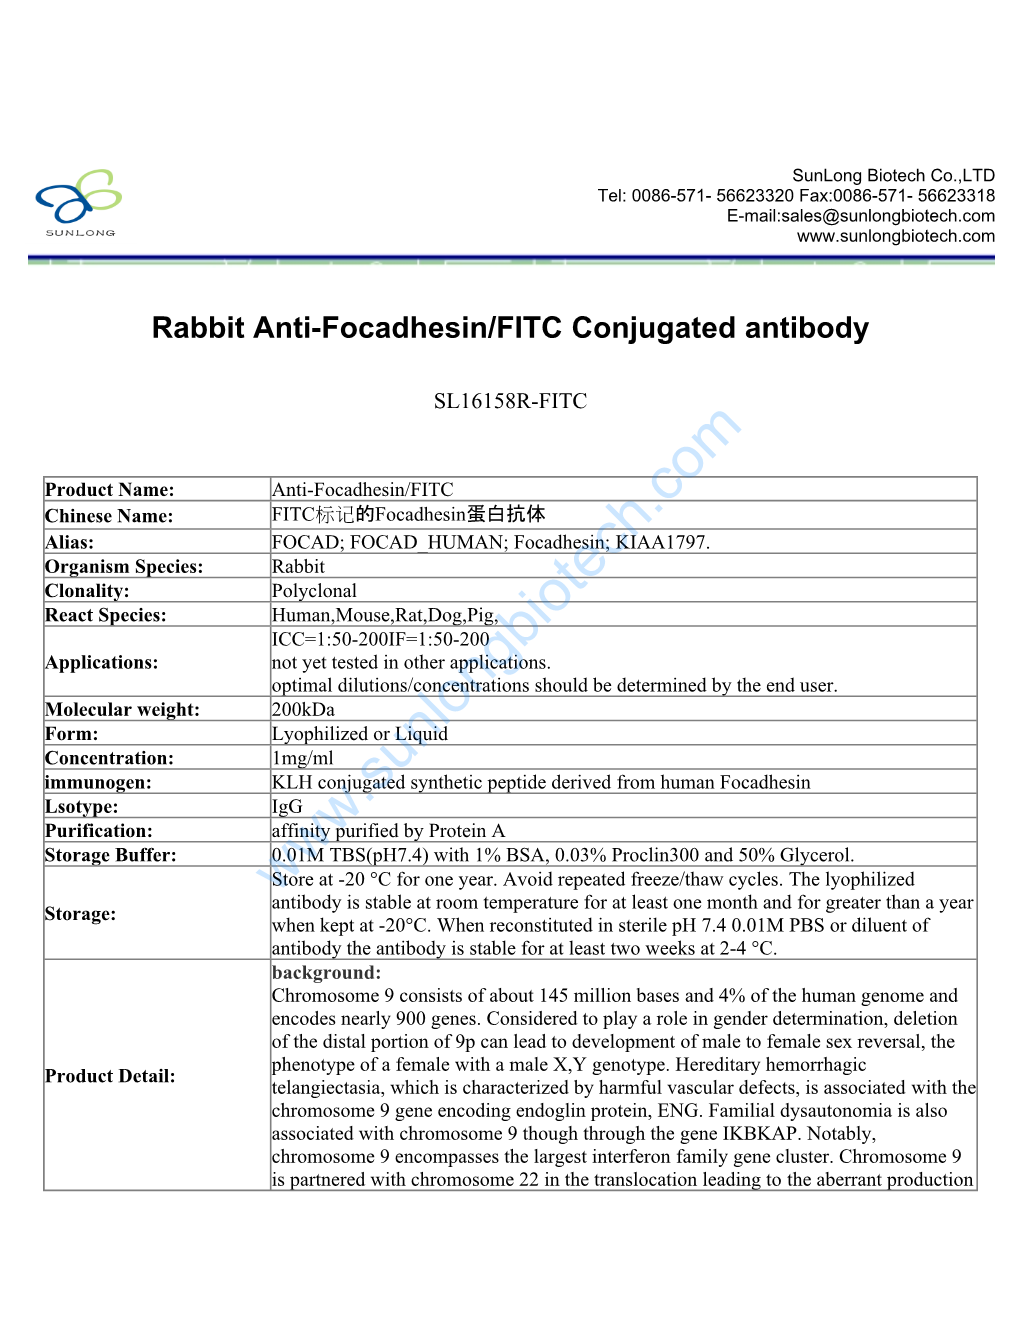 Rabbit Anti-Focadhesin/FITC Conjugated Antibody-SL16158R